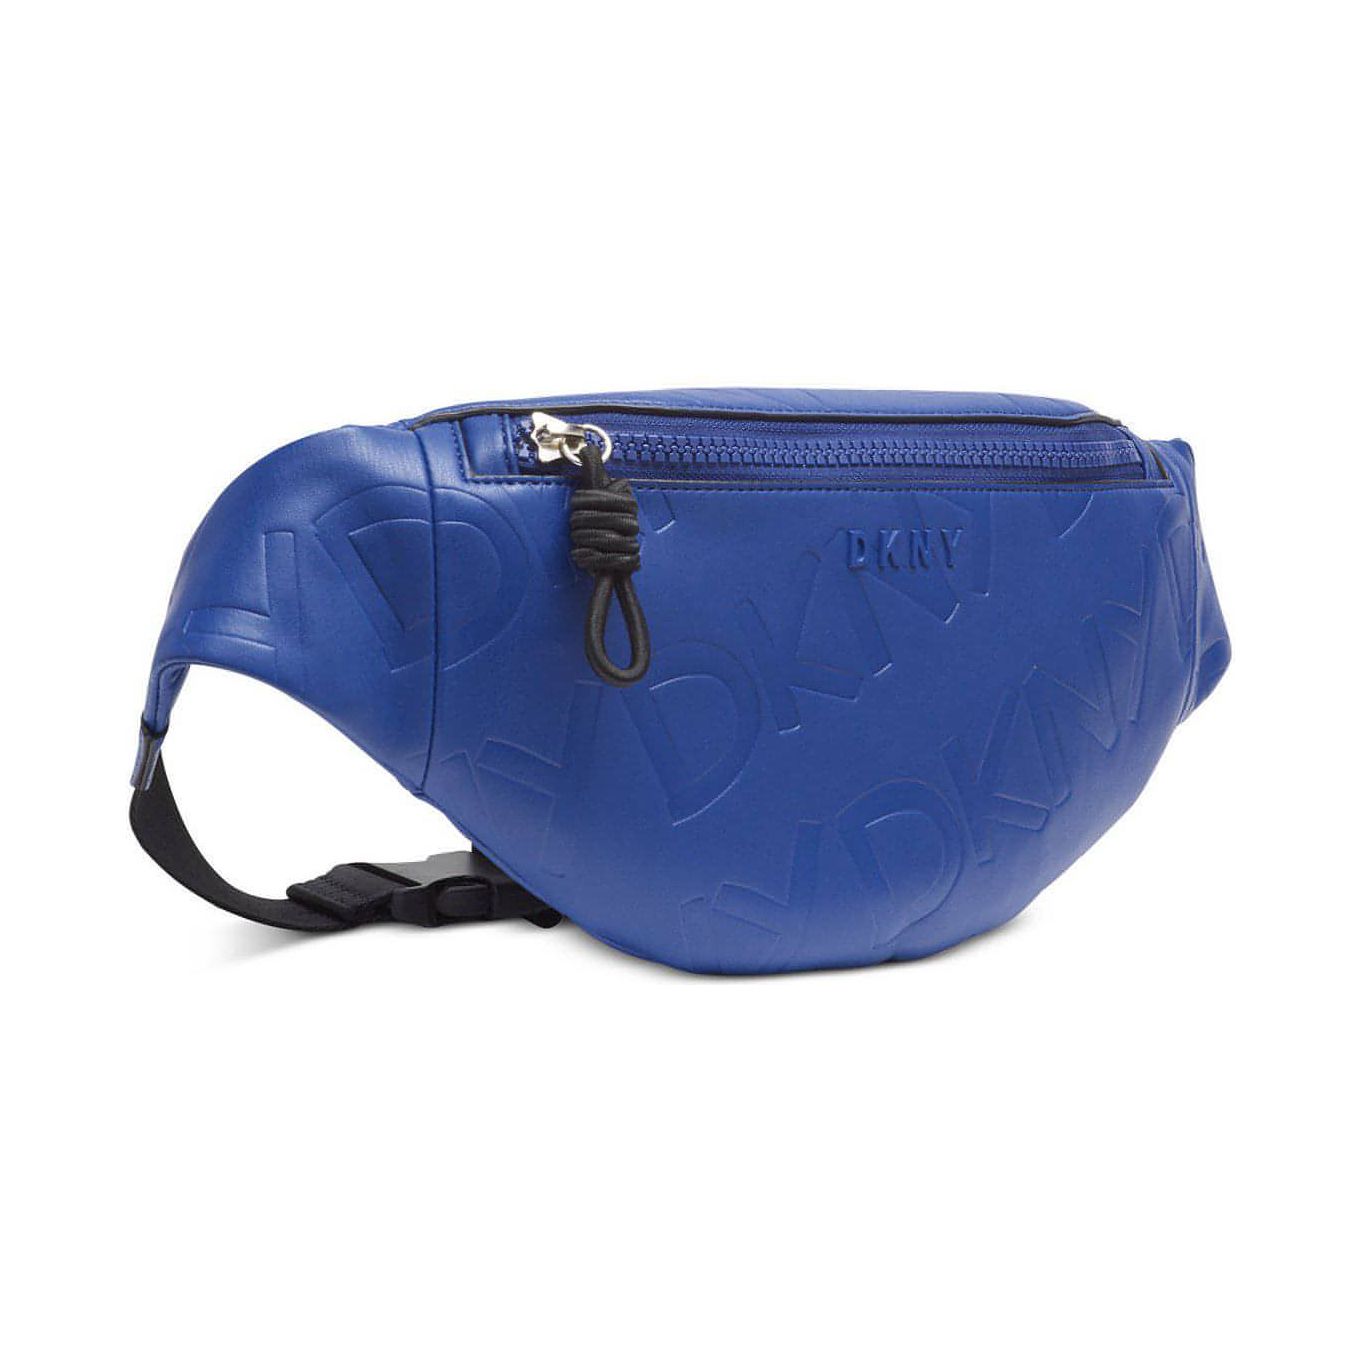 DKNY Jude Sling Bag (Royal Blue/Silver) – Brandat Outlet